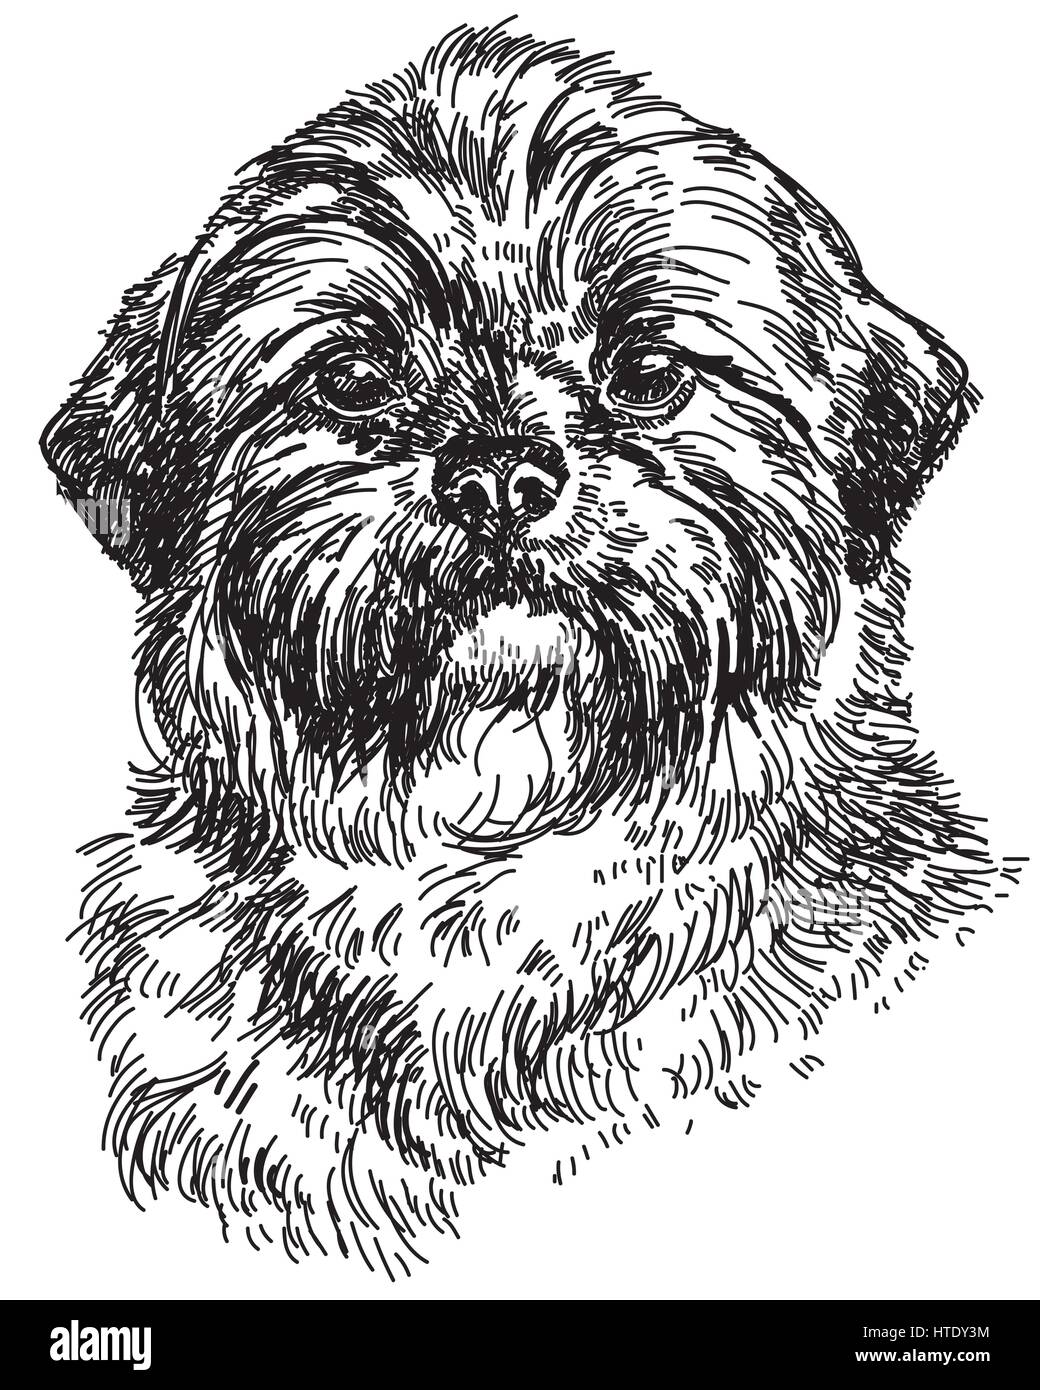 Graphische Portrait Hund Shih Tzu Handzeichnung Abbildung. Vektor isoliert auf einem weißen Hintergrund. Stock Vektor